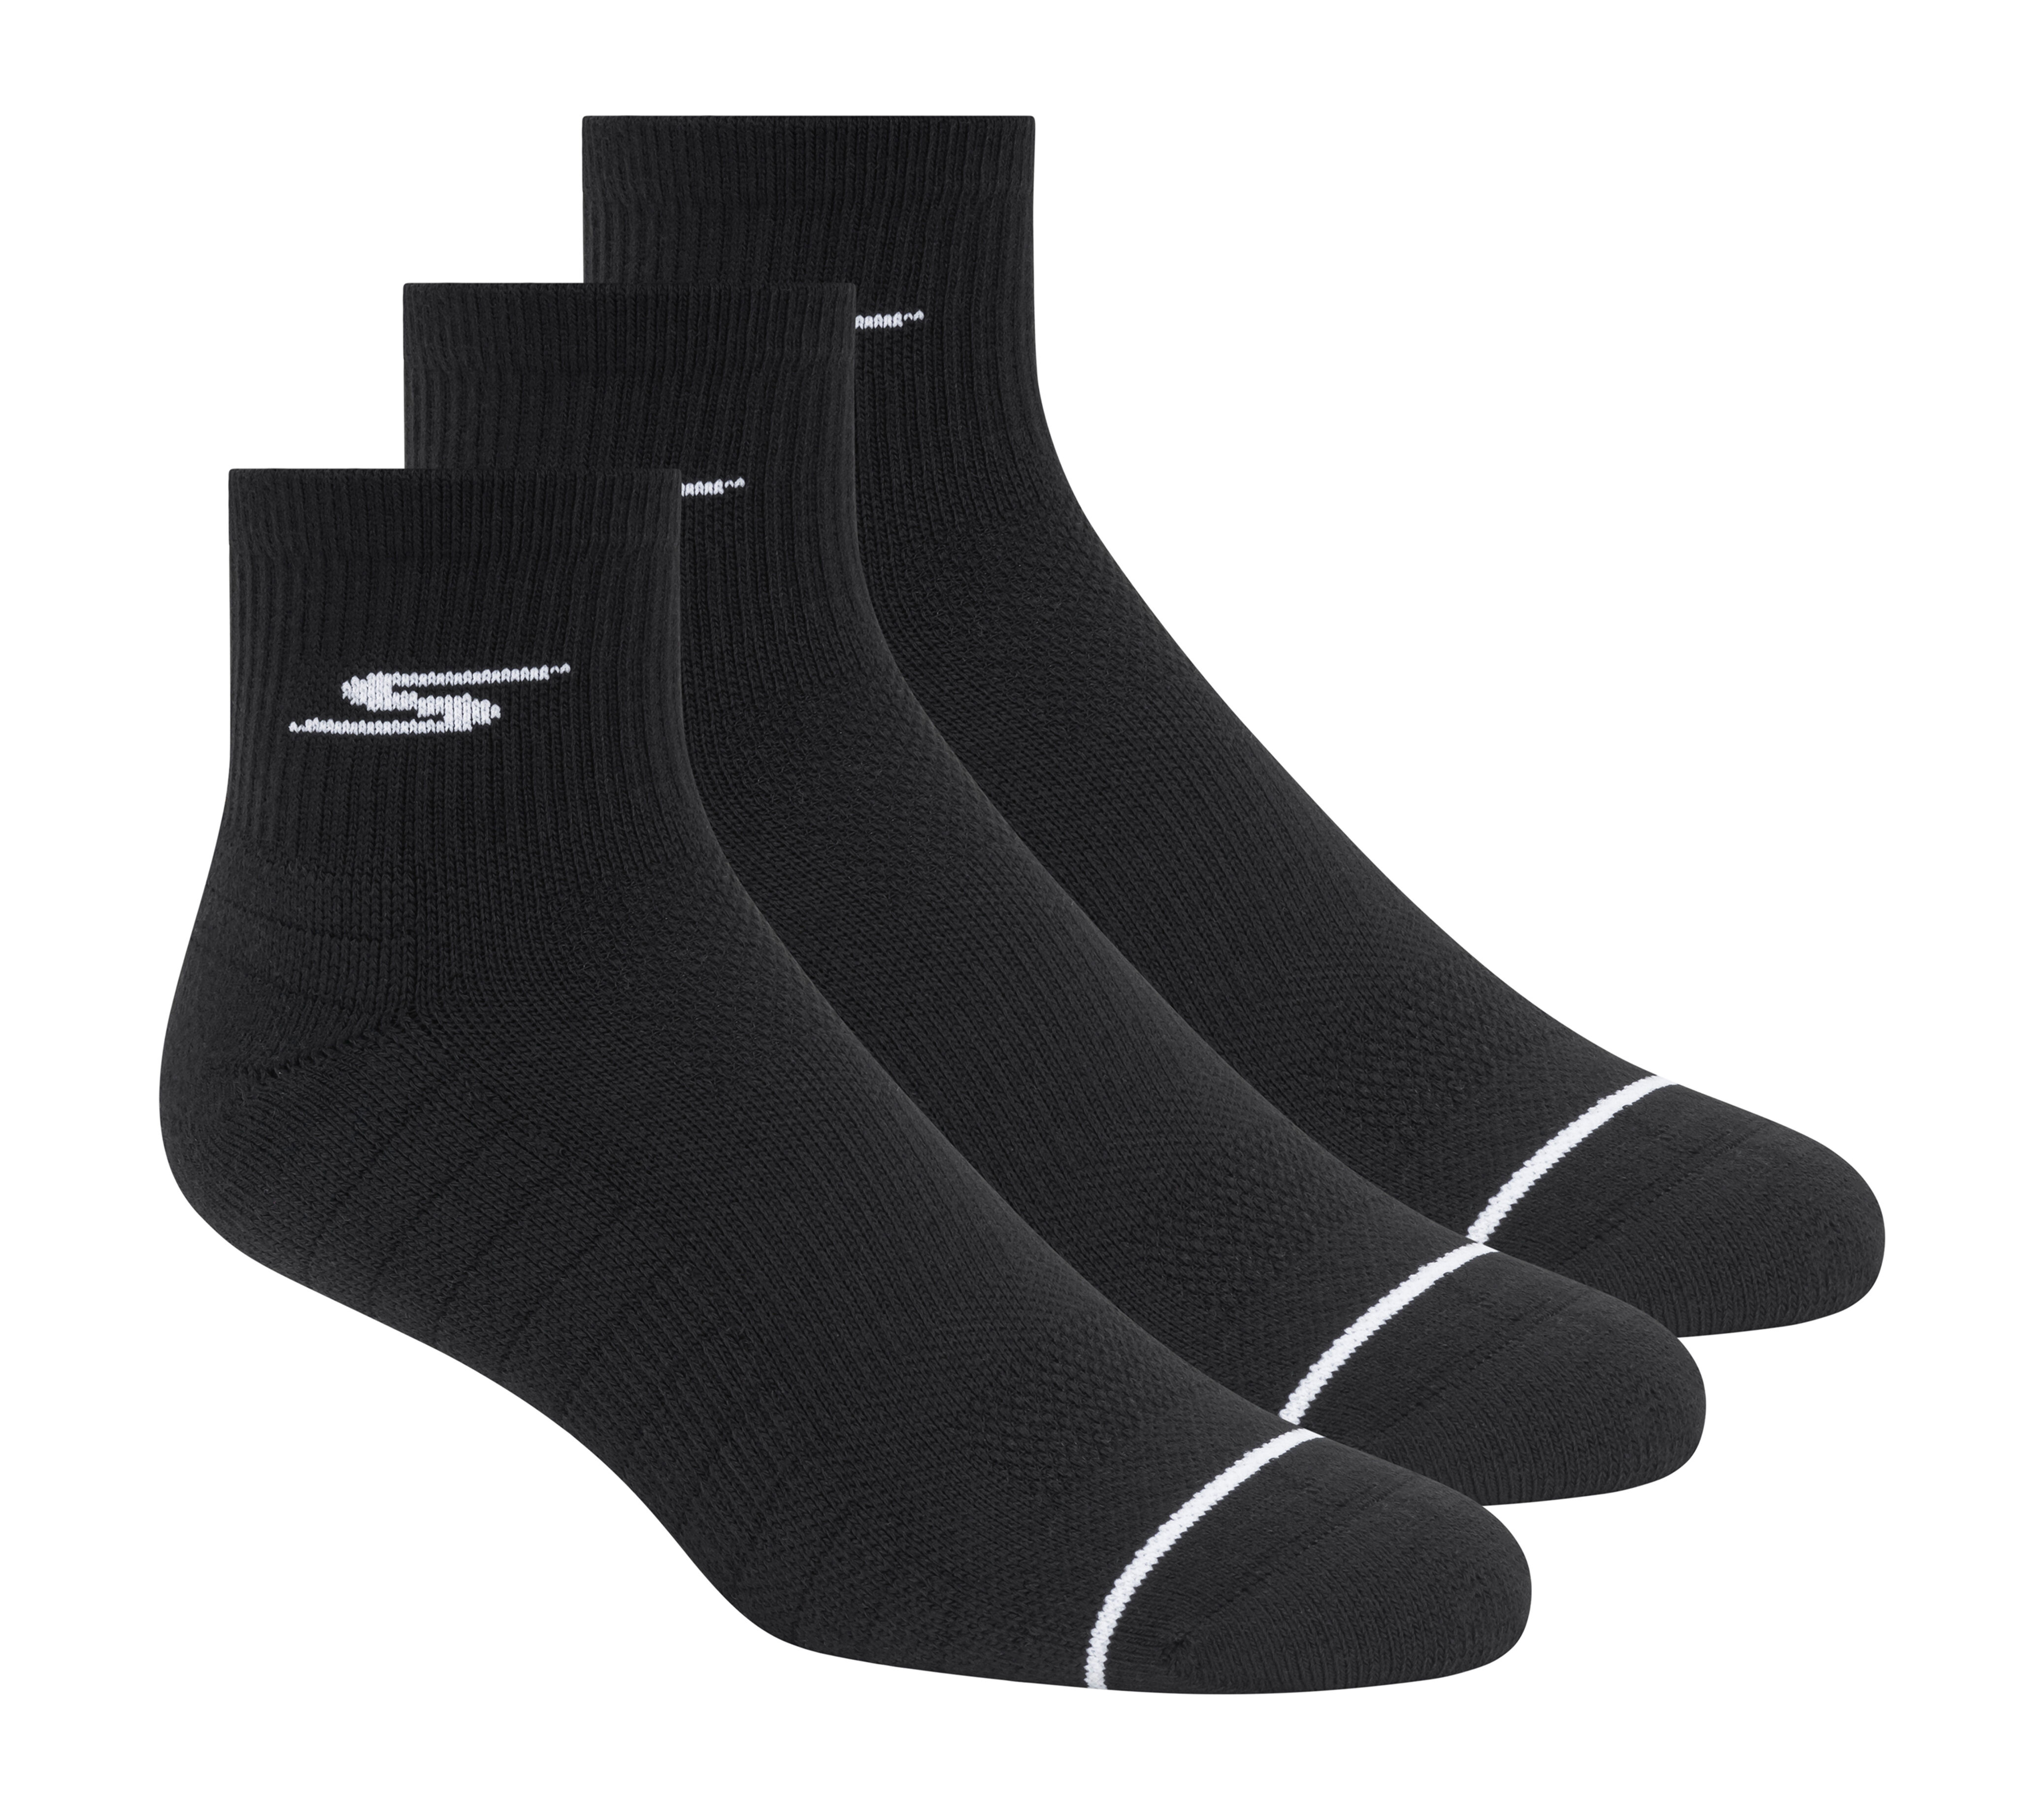 Quarter Premium Basic Socks - 3 Pack